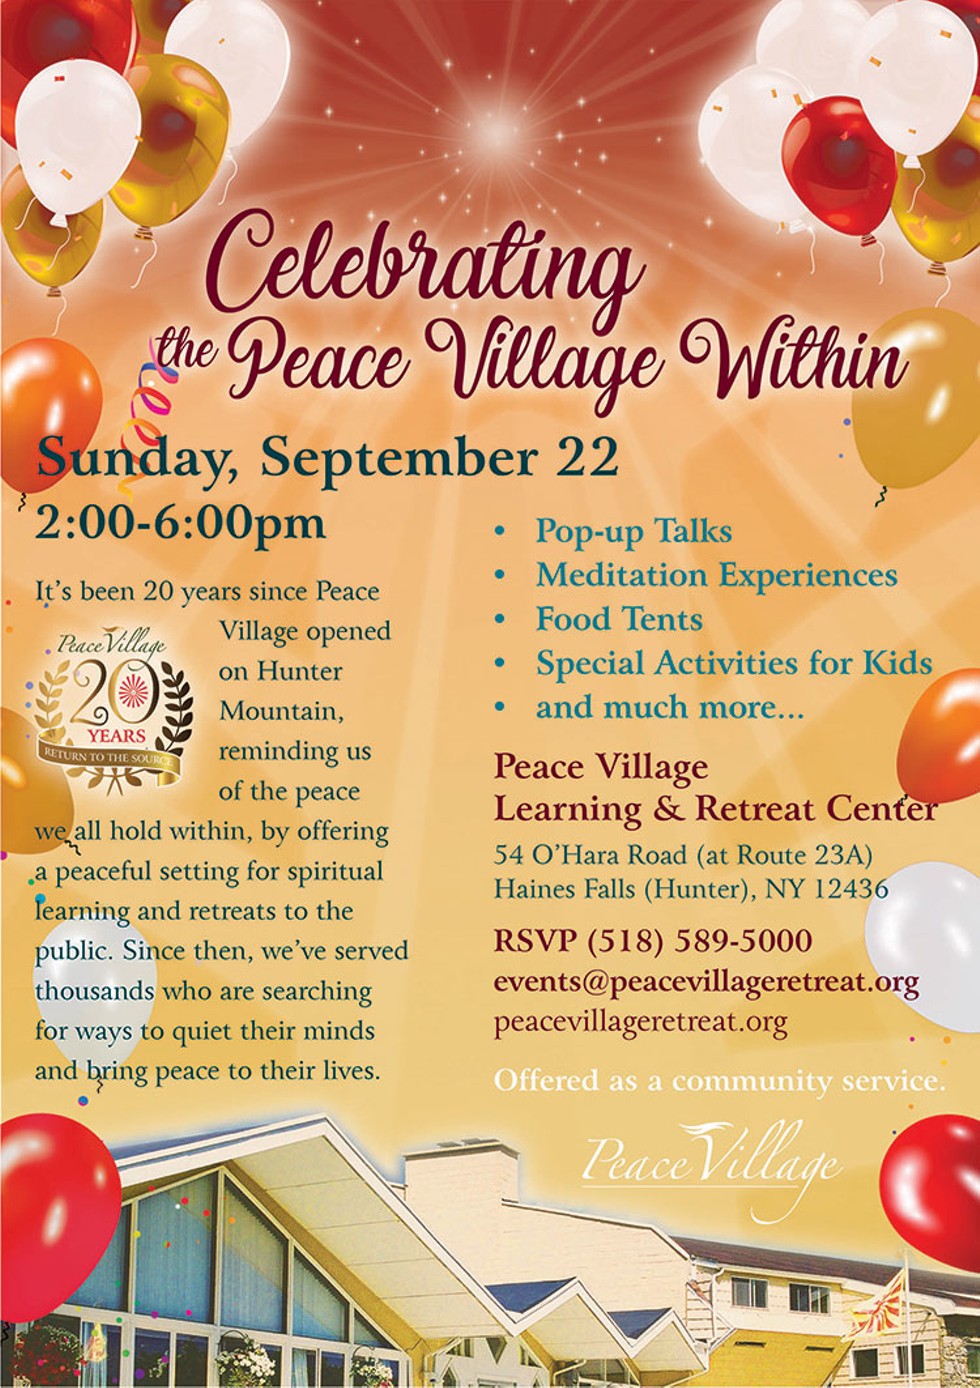 Peace Village Retreat Center - 20th Anniversary